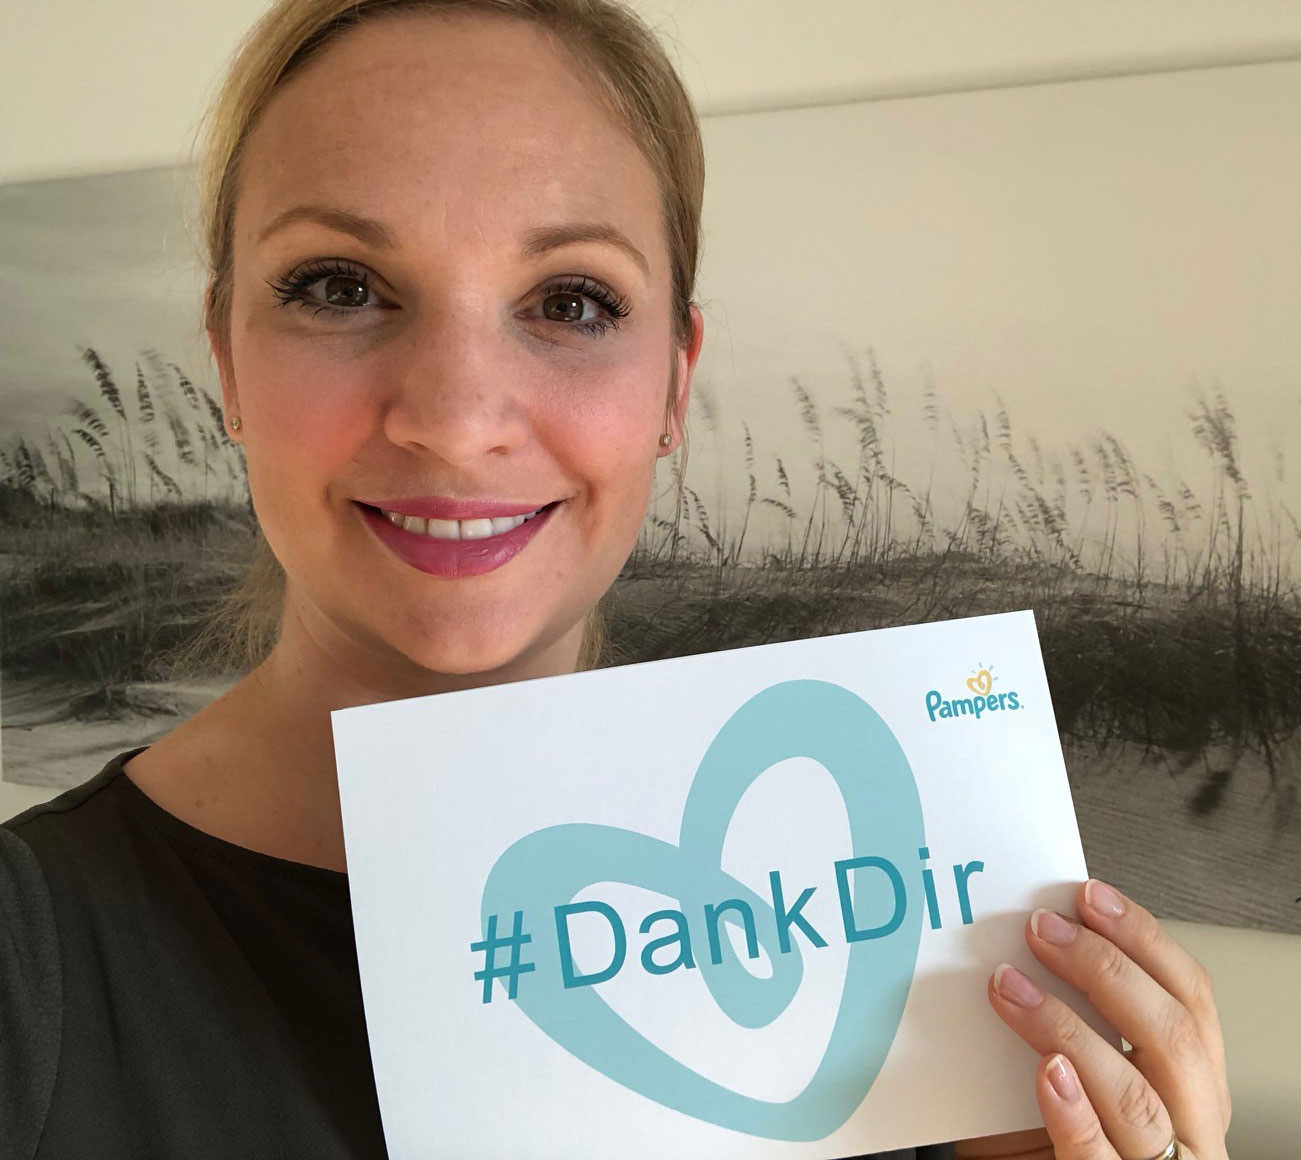 Pampers ehrt den Beruf der Hebamme mit der Aktion #DankDir.